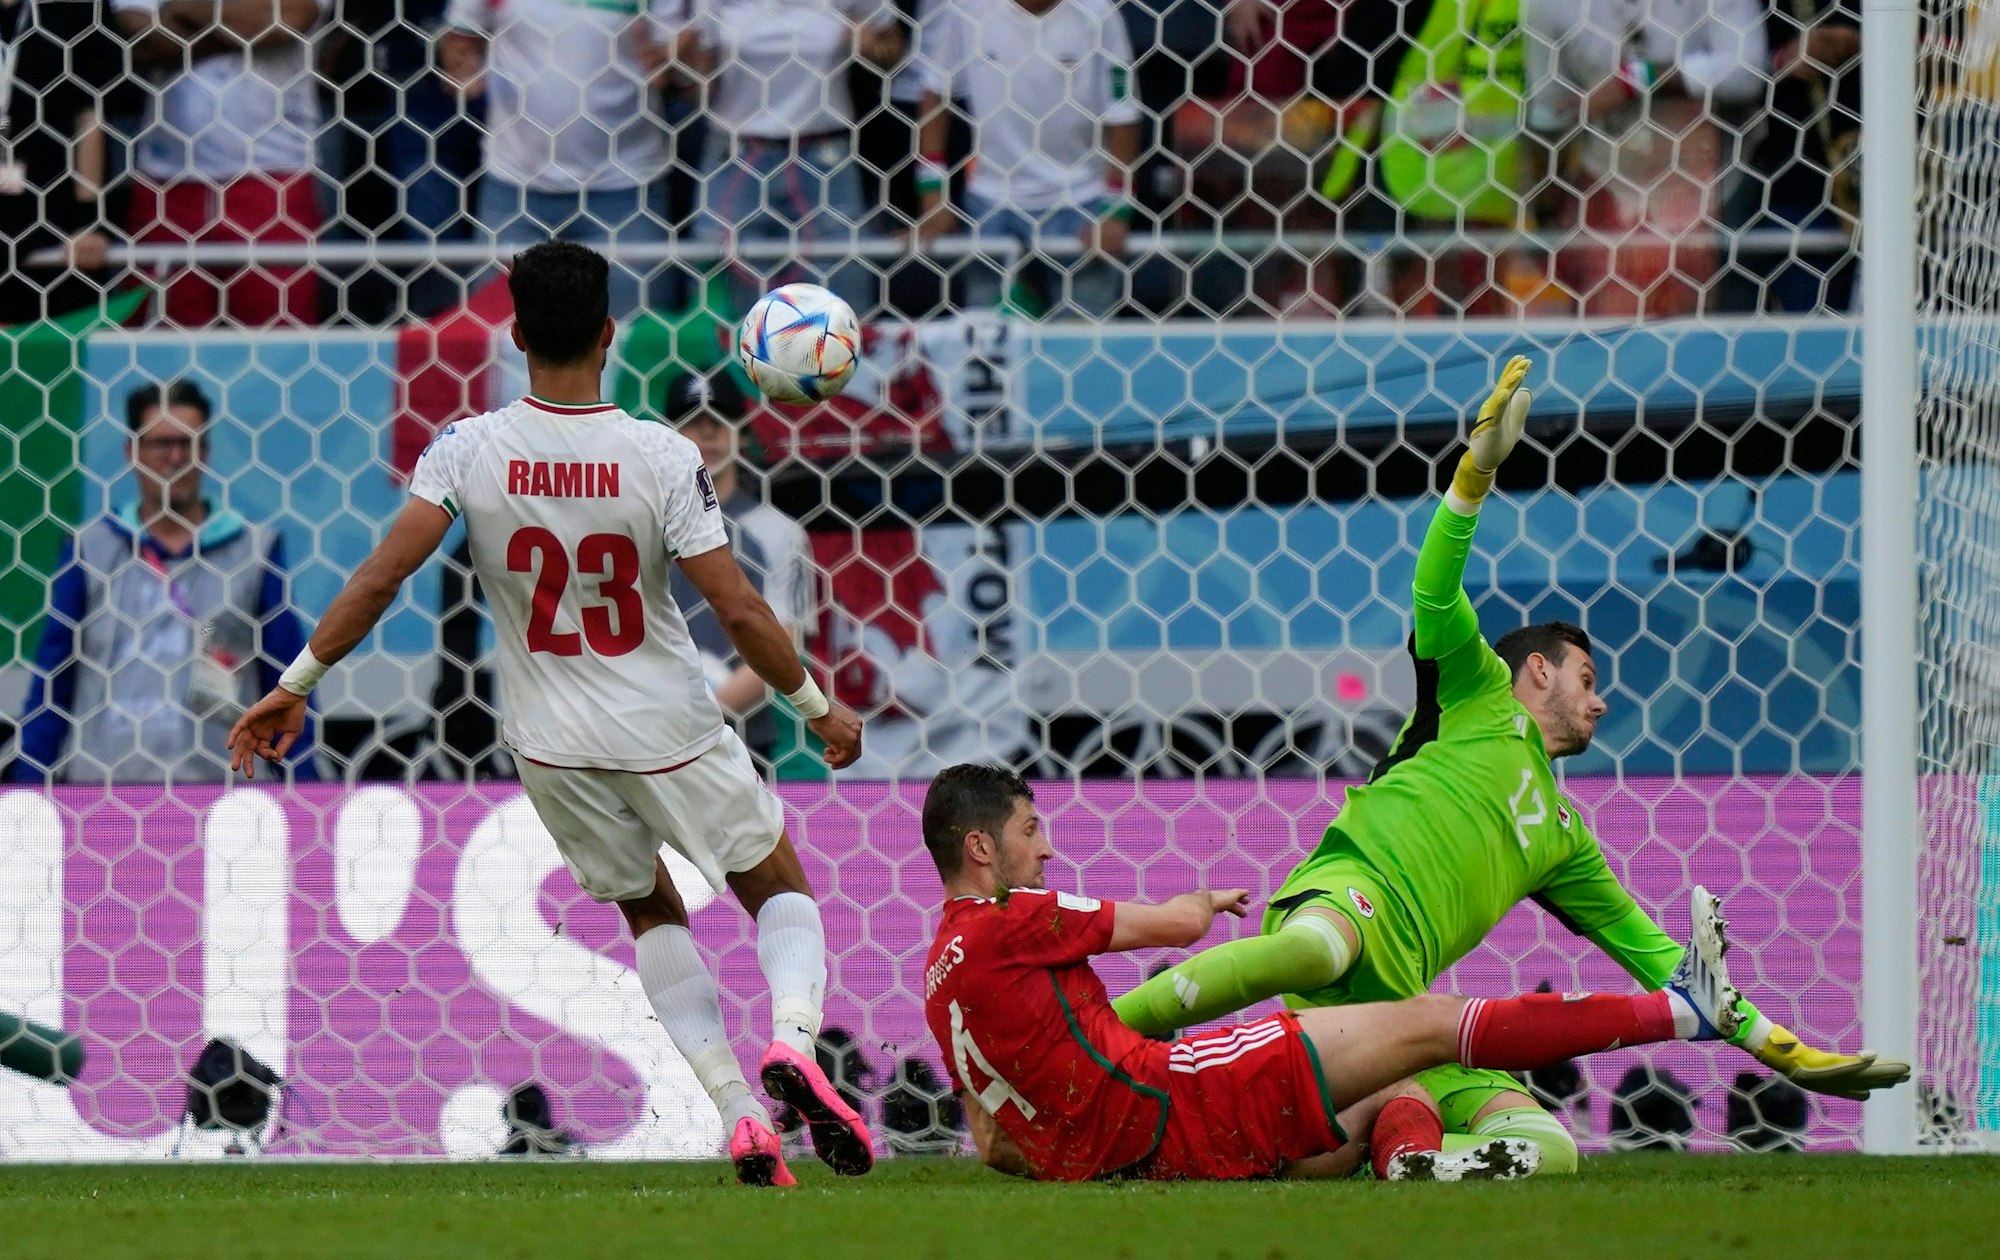 Ramin Rezaeian schießt das Tor zum 2:0 gegen Wales.